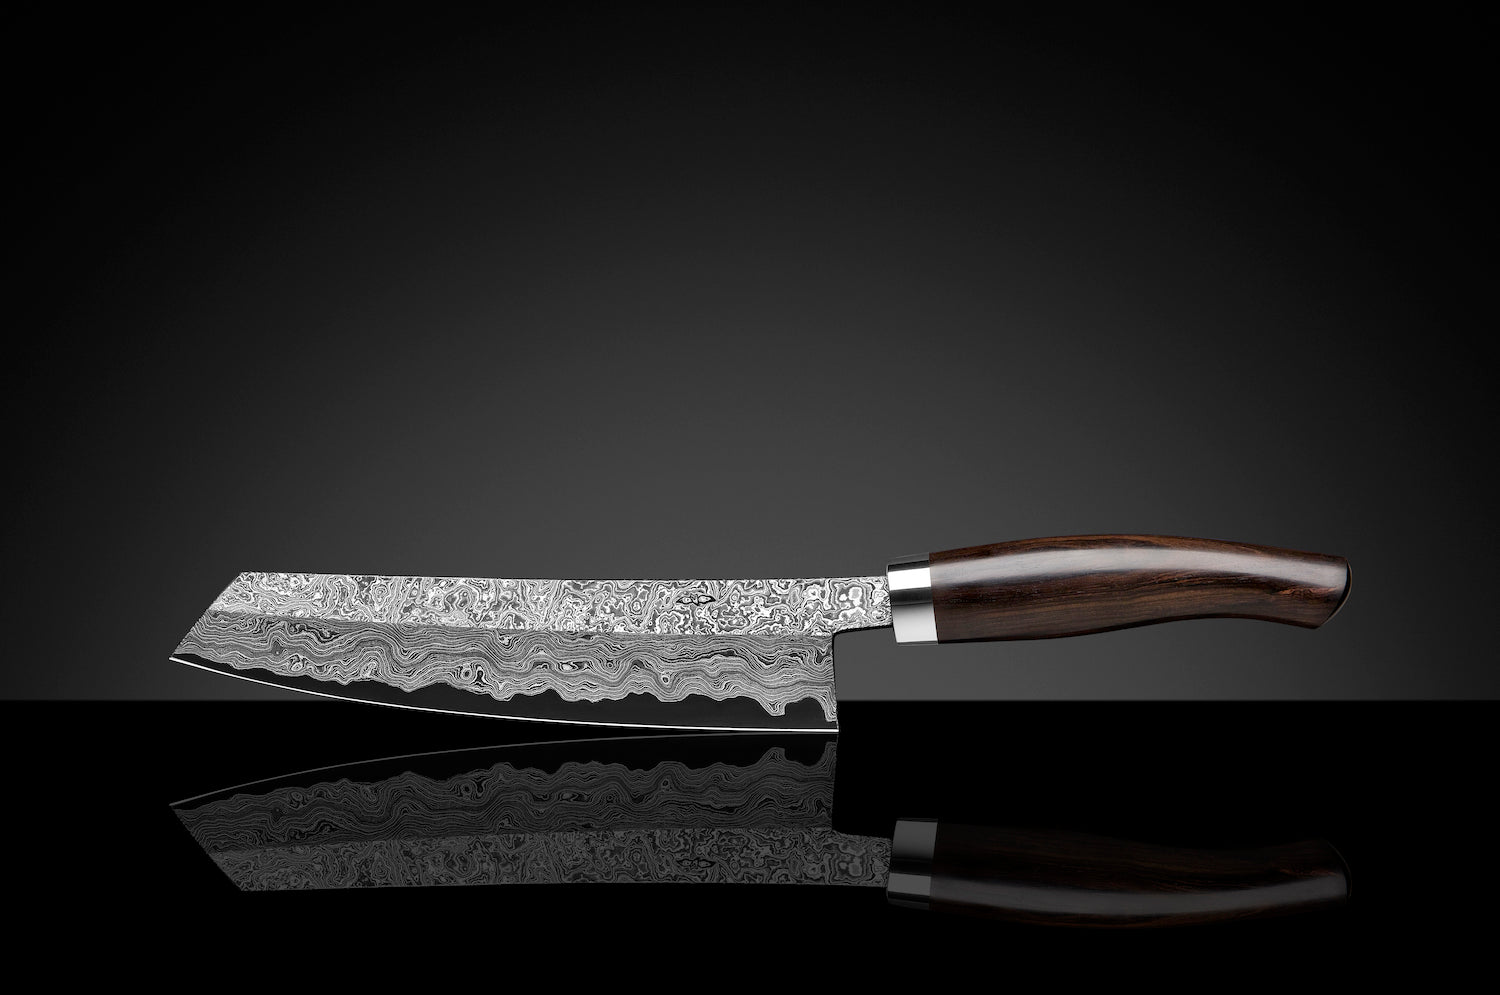 Kochmesser aus Damaststahl mit Holzgriff auf einer reflektierenden schwarzen Oberfläche.